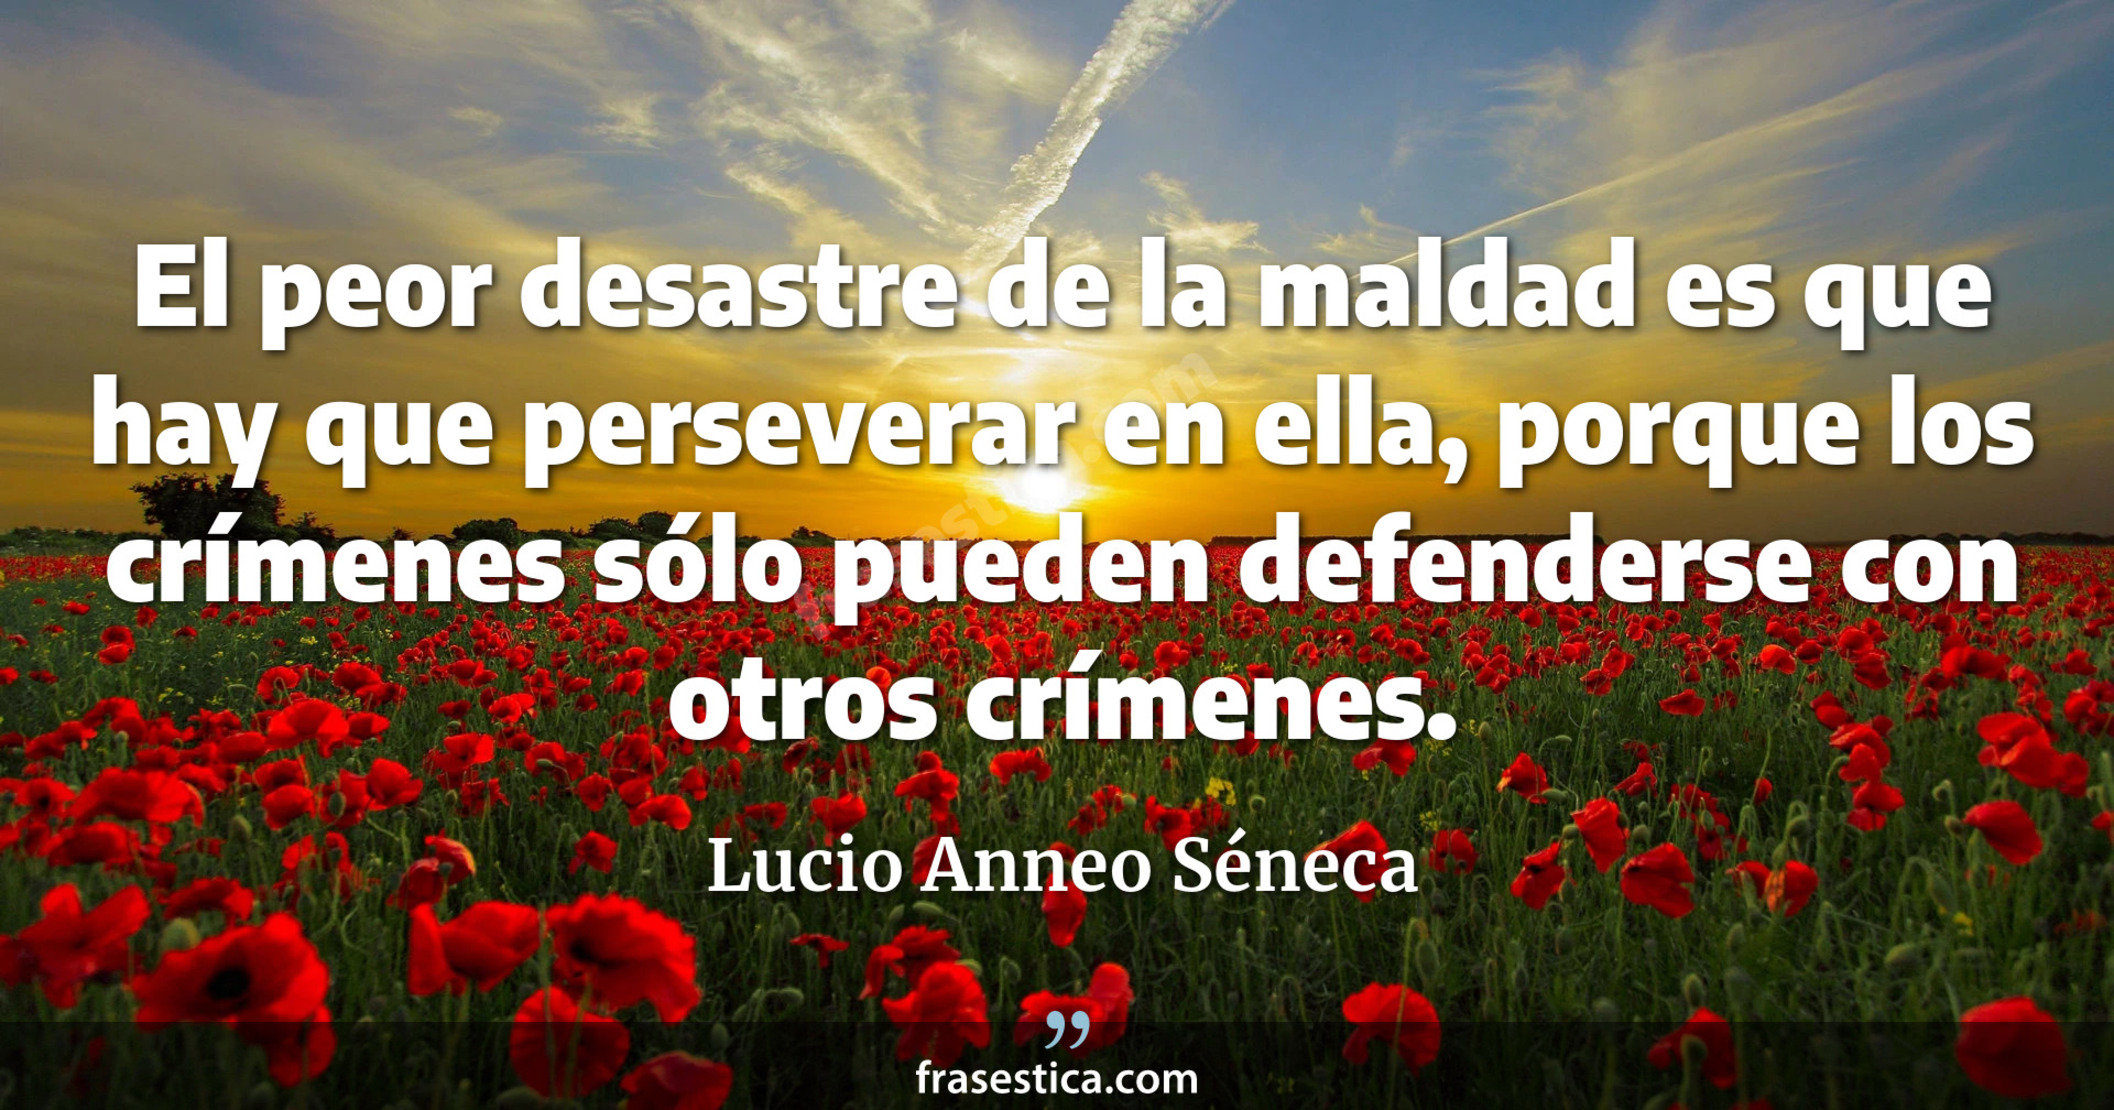 El peor desastre de la maldad es que hay que perseverar en ella, porque los crímenes sólo pueden defenderse con otros crímenes. - Lucio Anneo Séneca